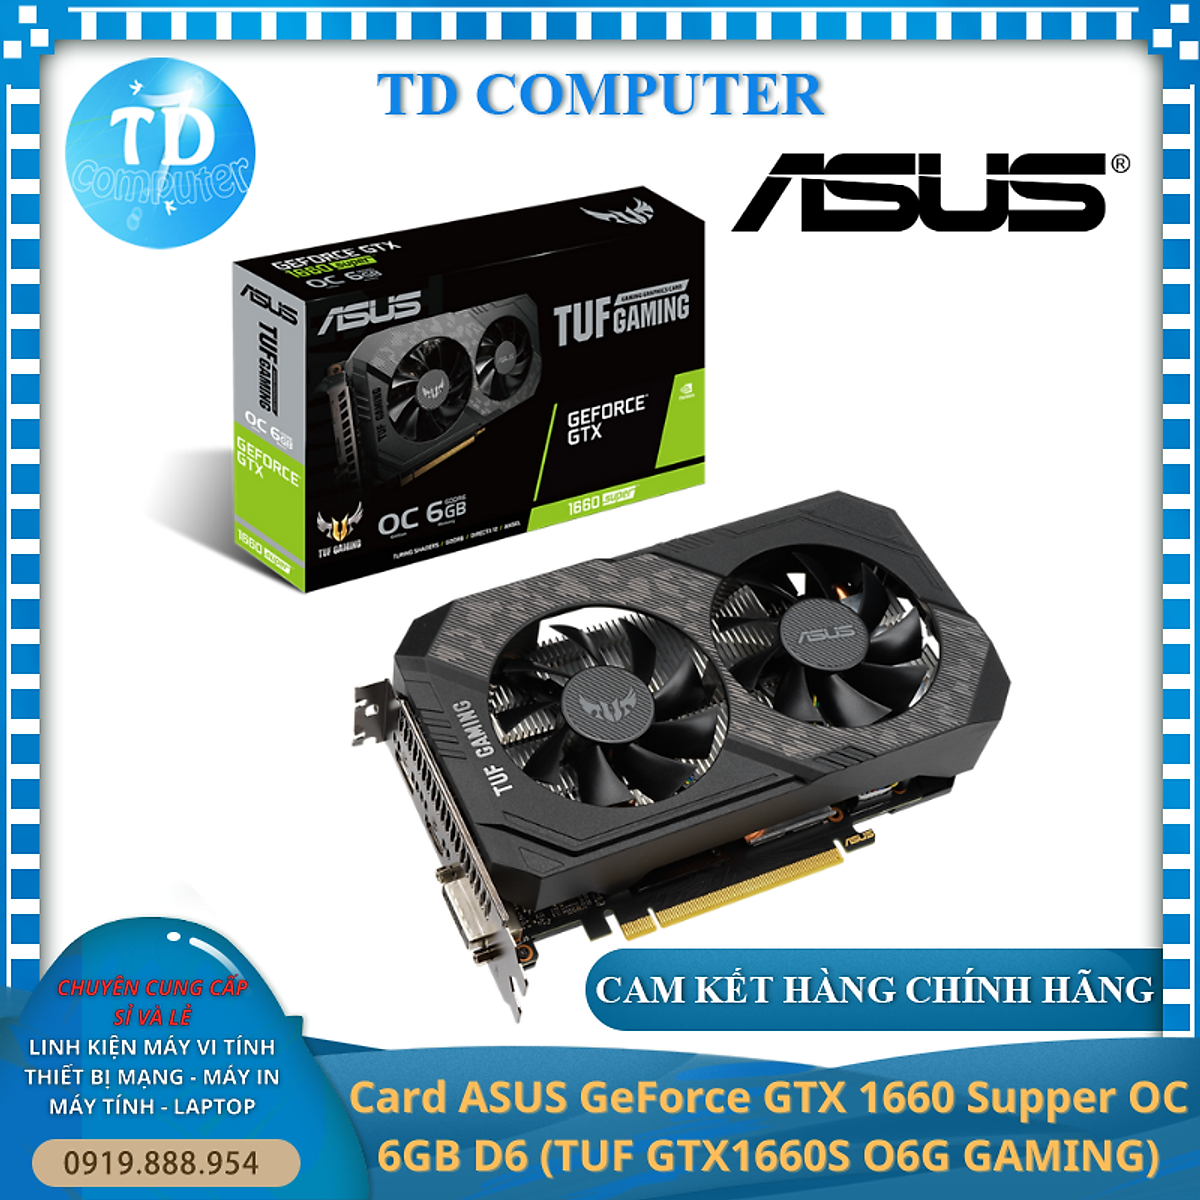 Card màn hình ASUS GeForce GTX 1660 Supper OC 6GB D6 (TUF GTX1660S O6G GAMING) - Hàng chính hãng Viết Sơn phân phối